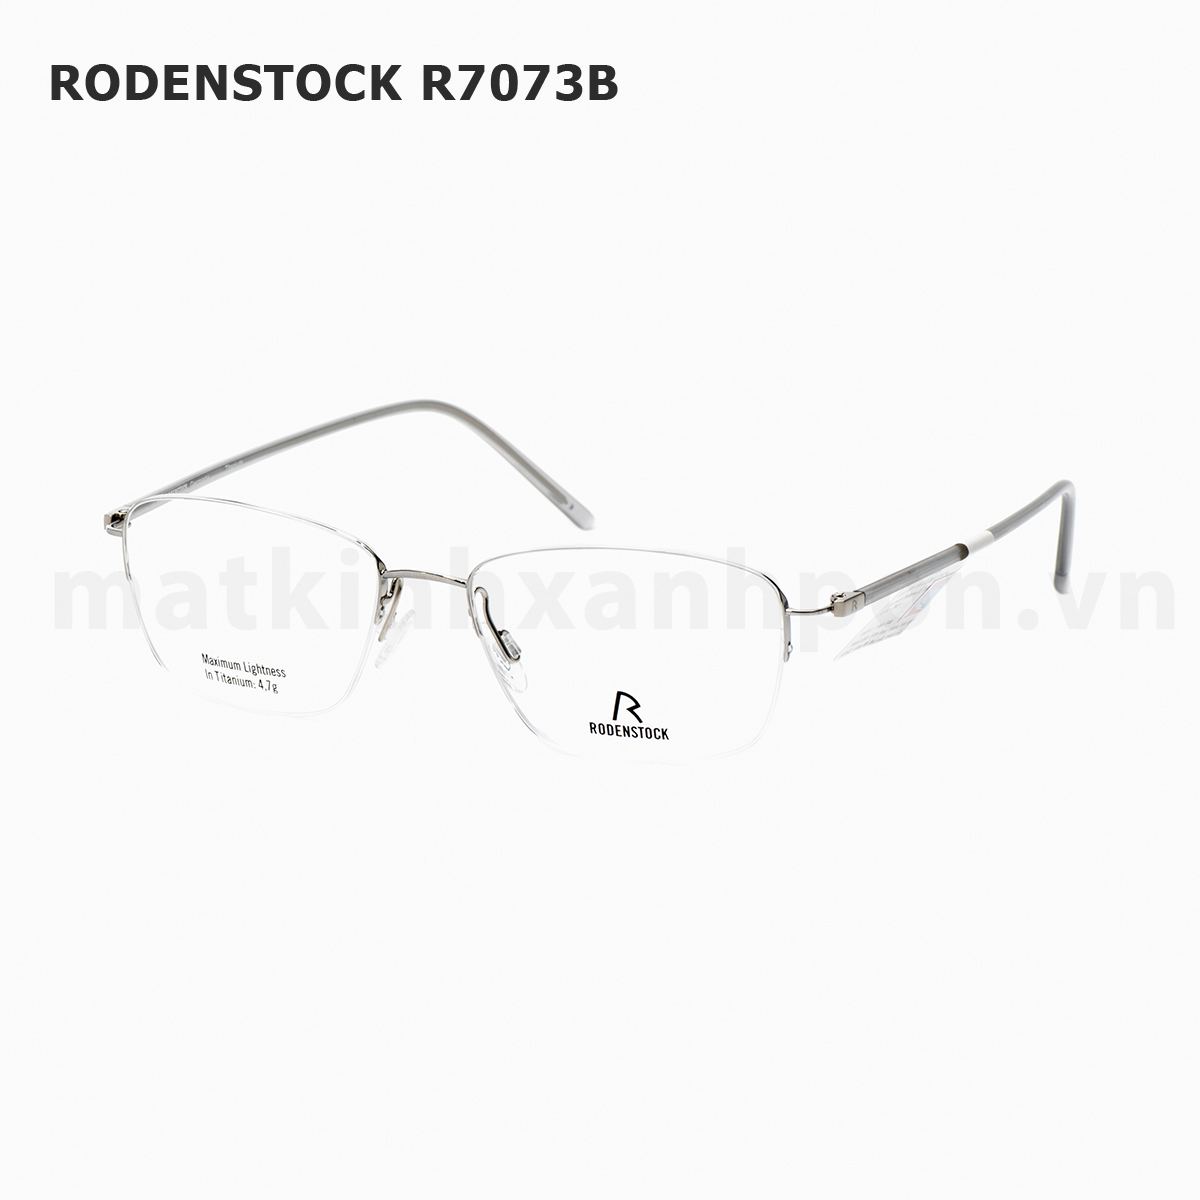 Rodenstock R7073B